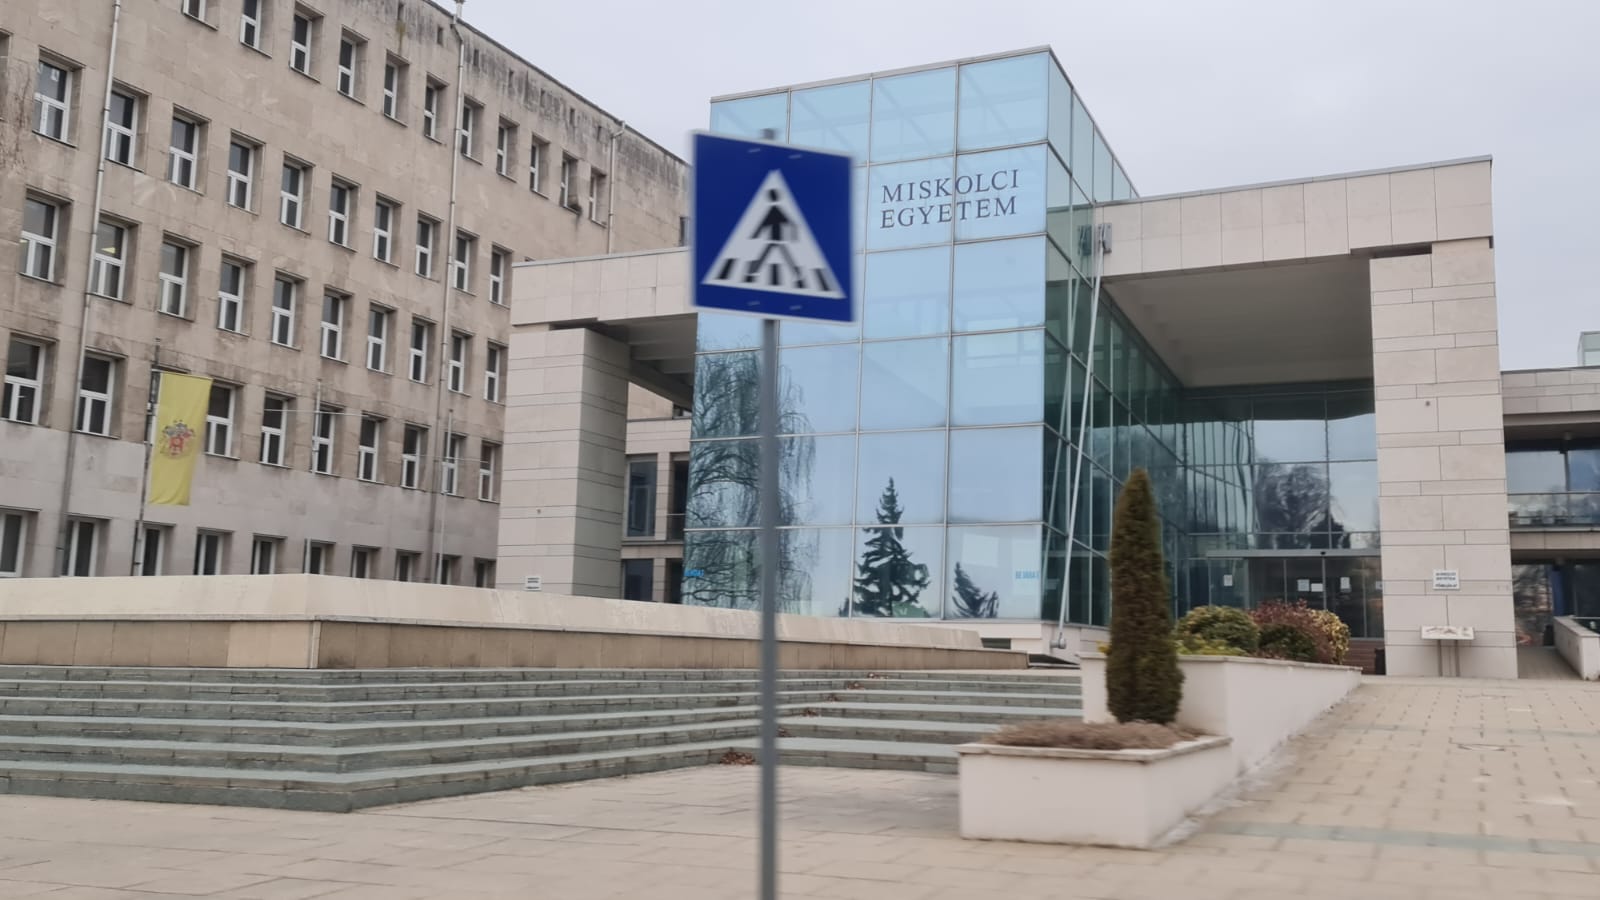 EXCLUSIV: Universitatea Petrol Gaze din Ploiesti, colaborare cu Universitatea Miskolc (Ungaria)